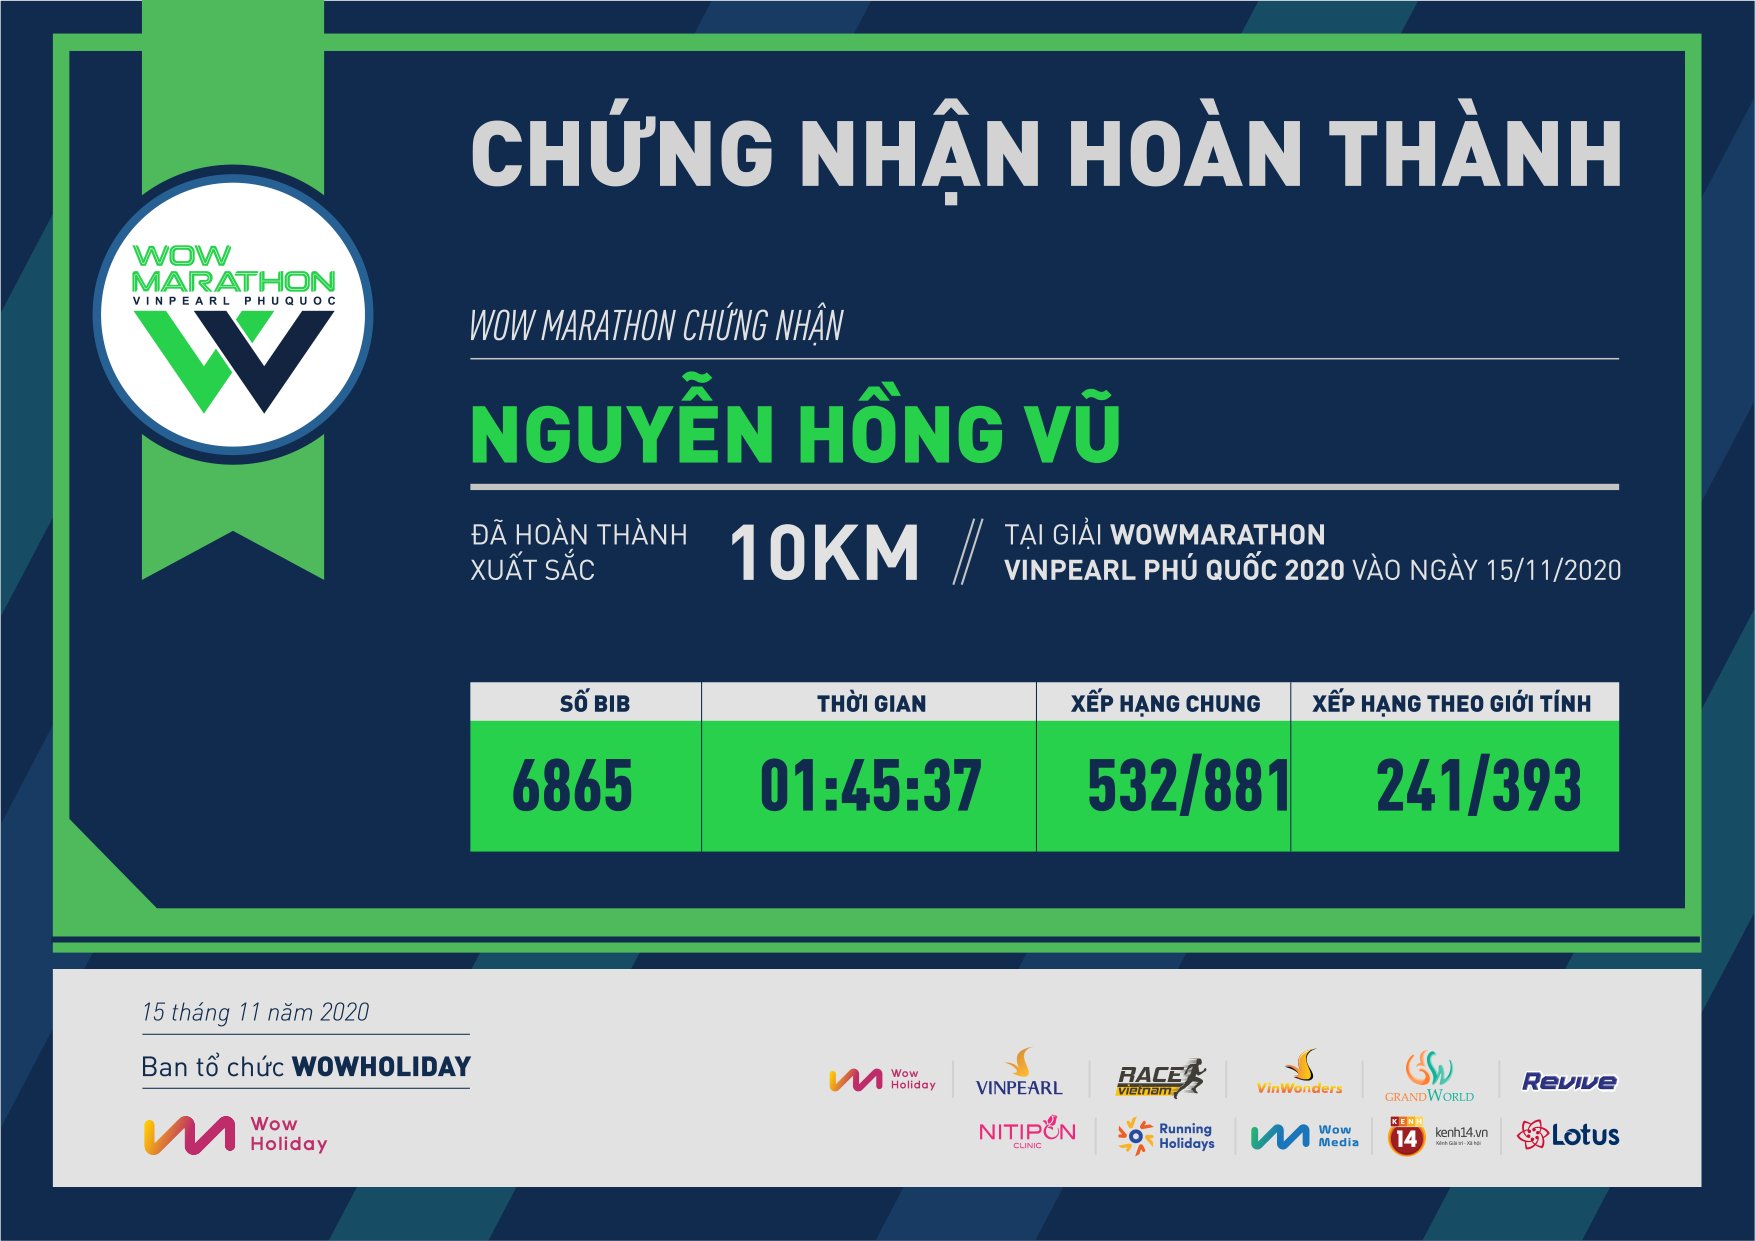 6865 - Nguyễn Hồng Vũ